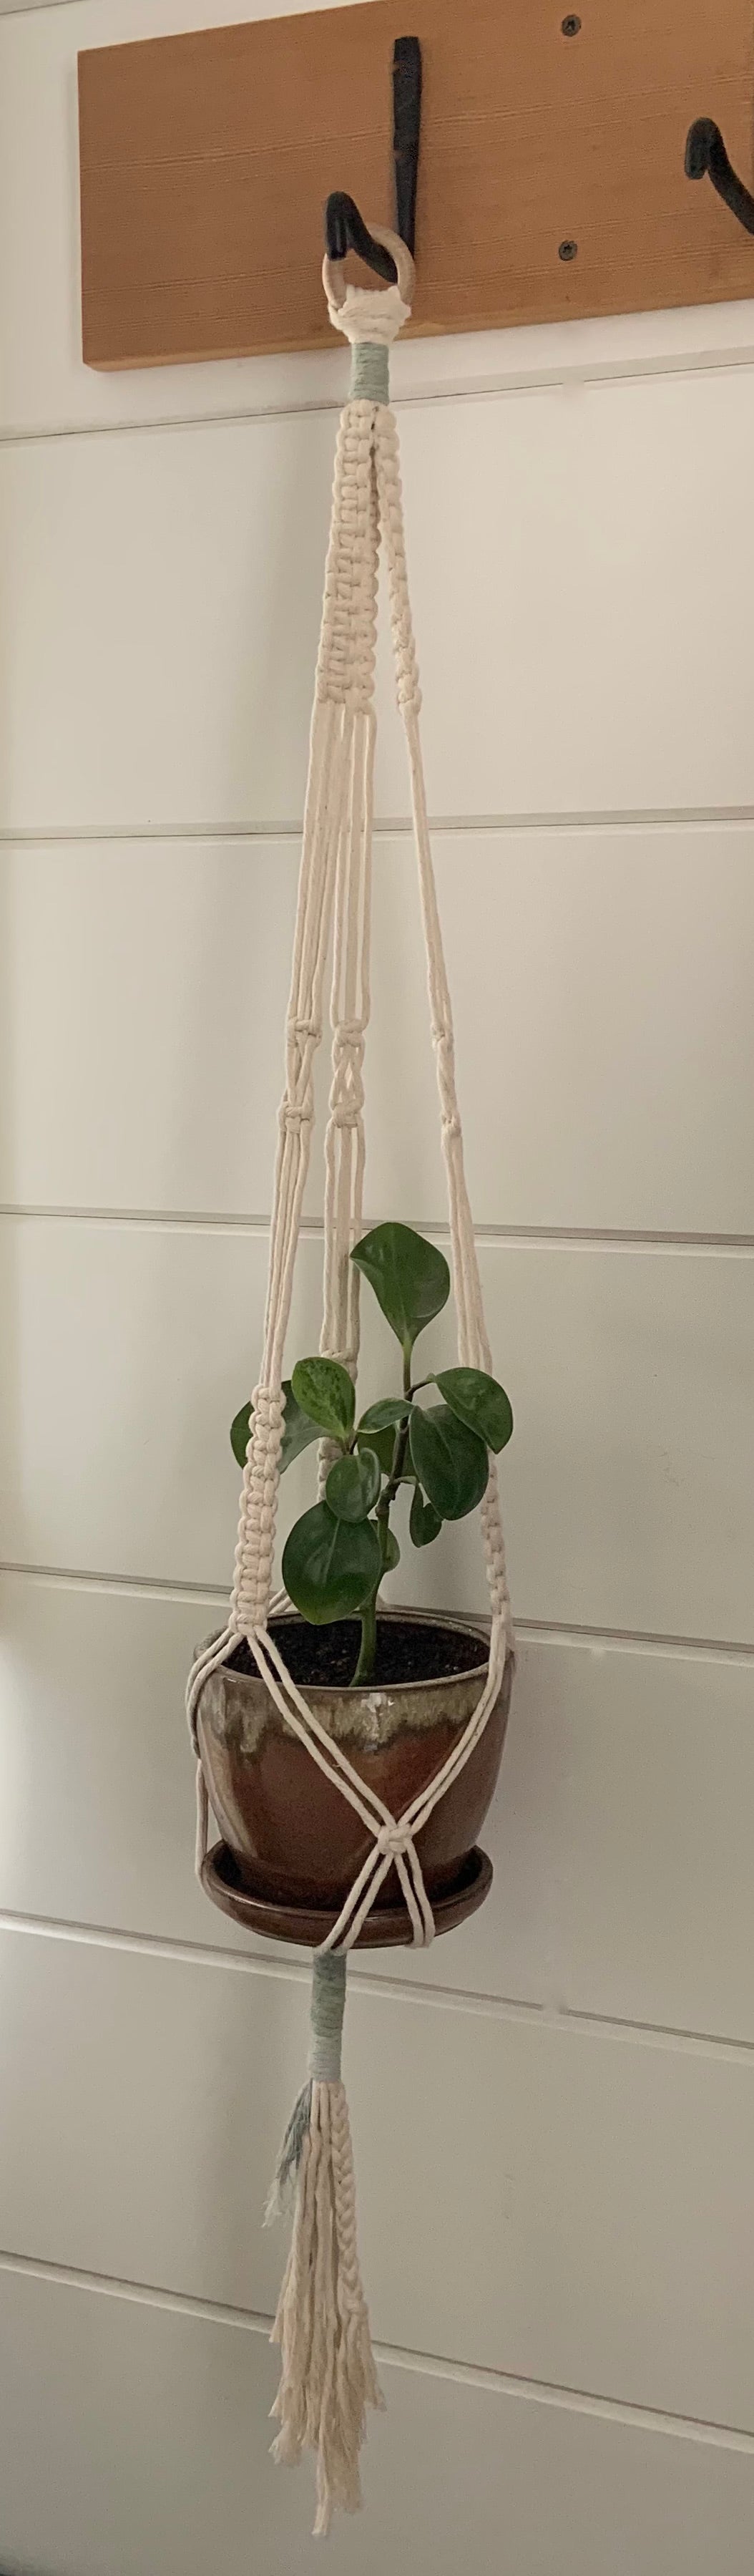 Plant Hanger - Winter